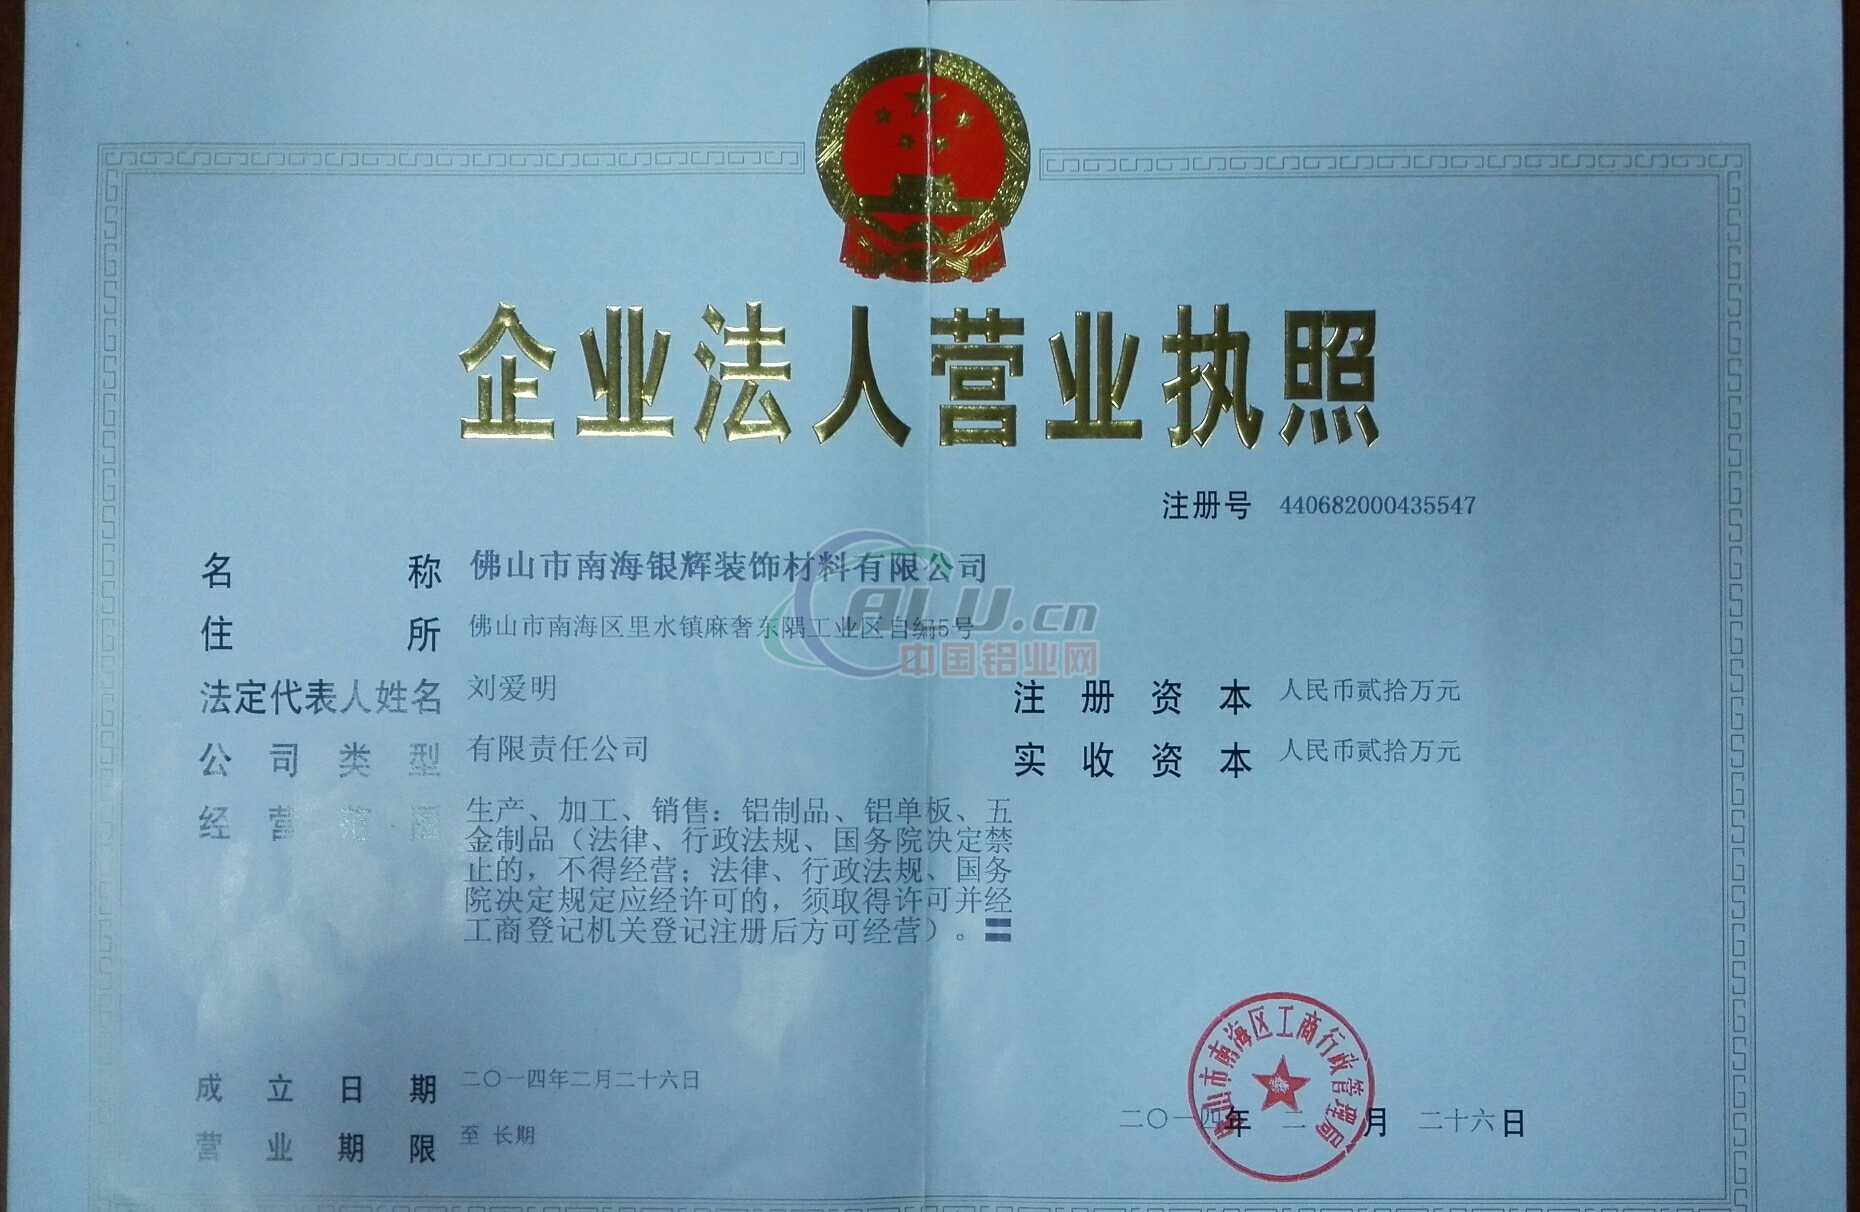 登记机关:佛山市南海区市场监督管理局 法人代表:刘爱明 注册资本